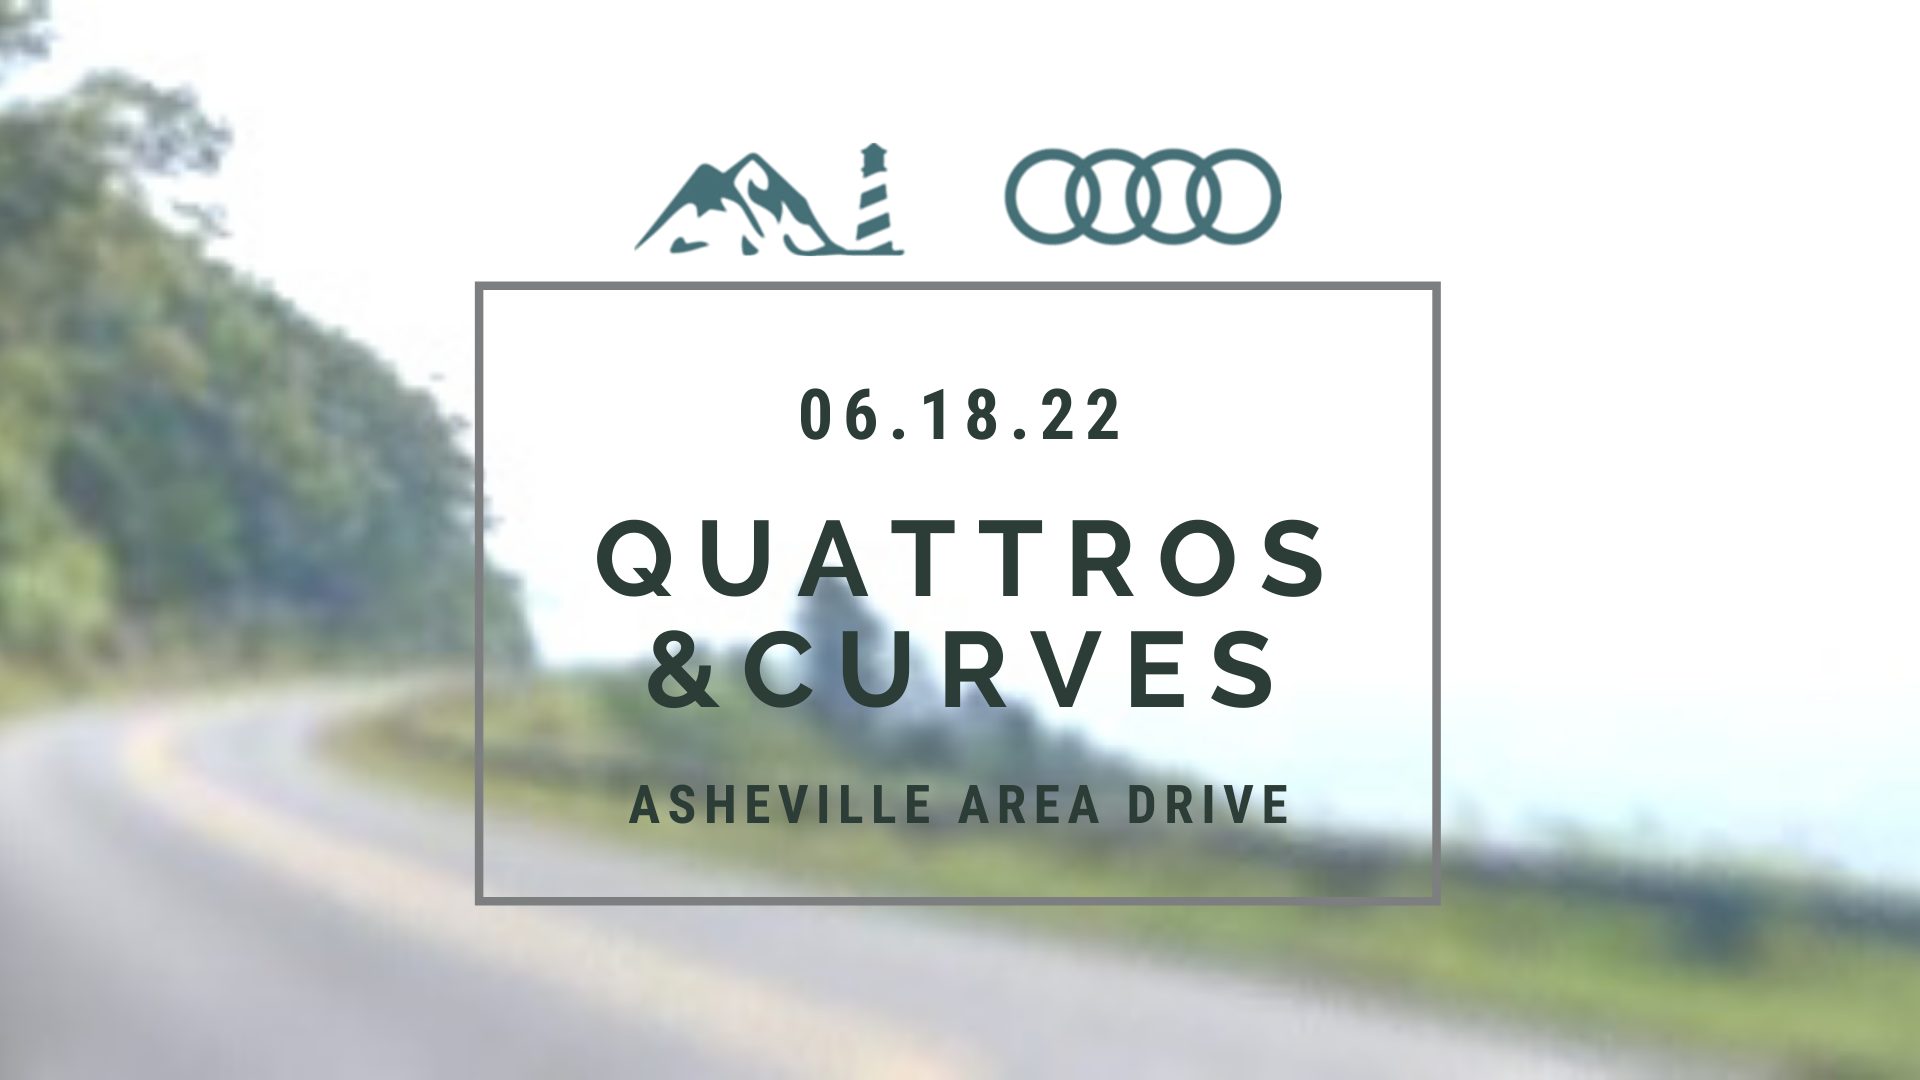 Quattros & Curves Asheville Area Drive